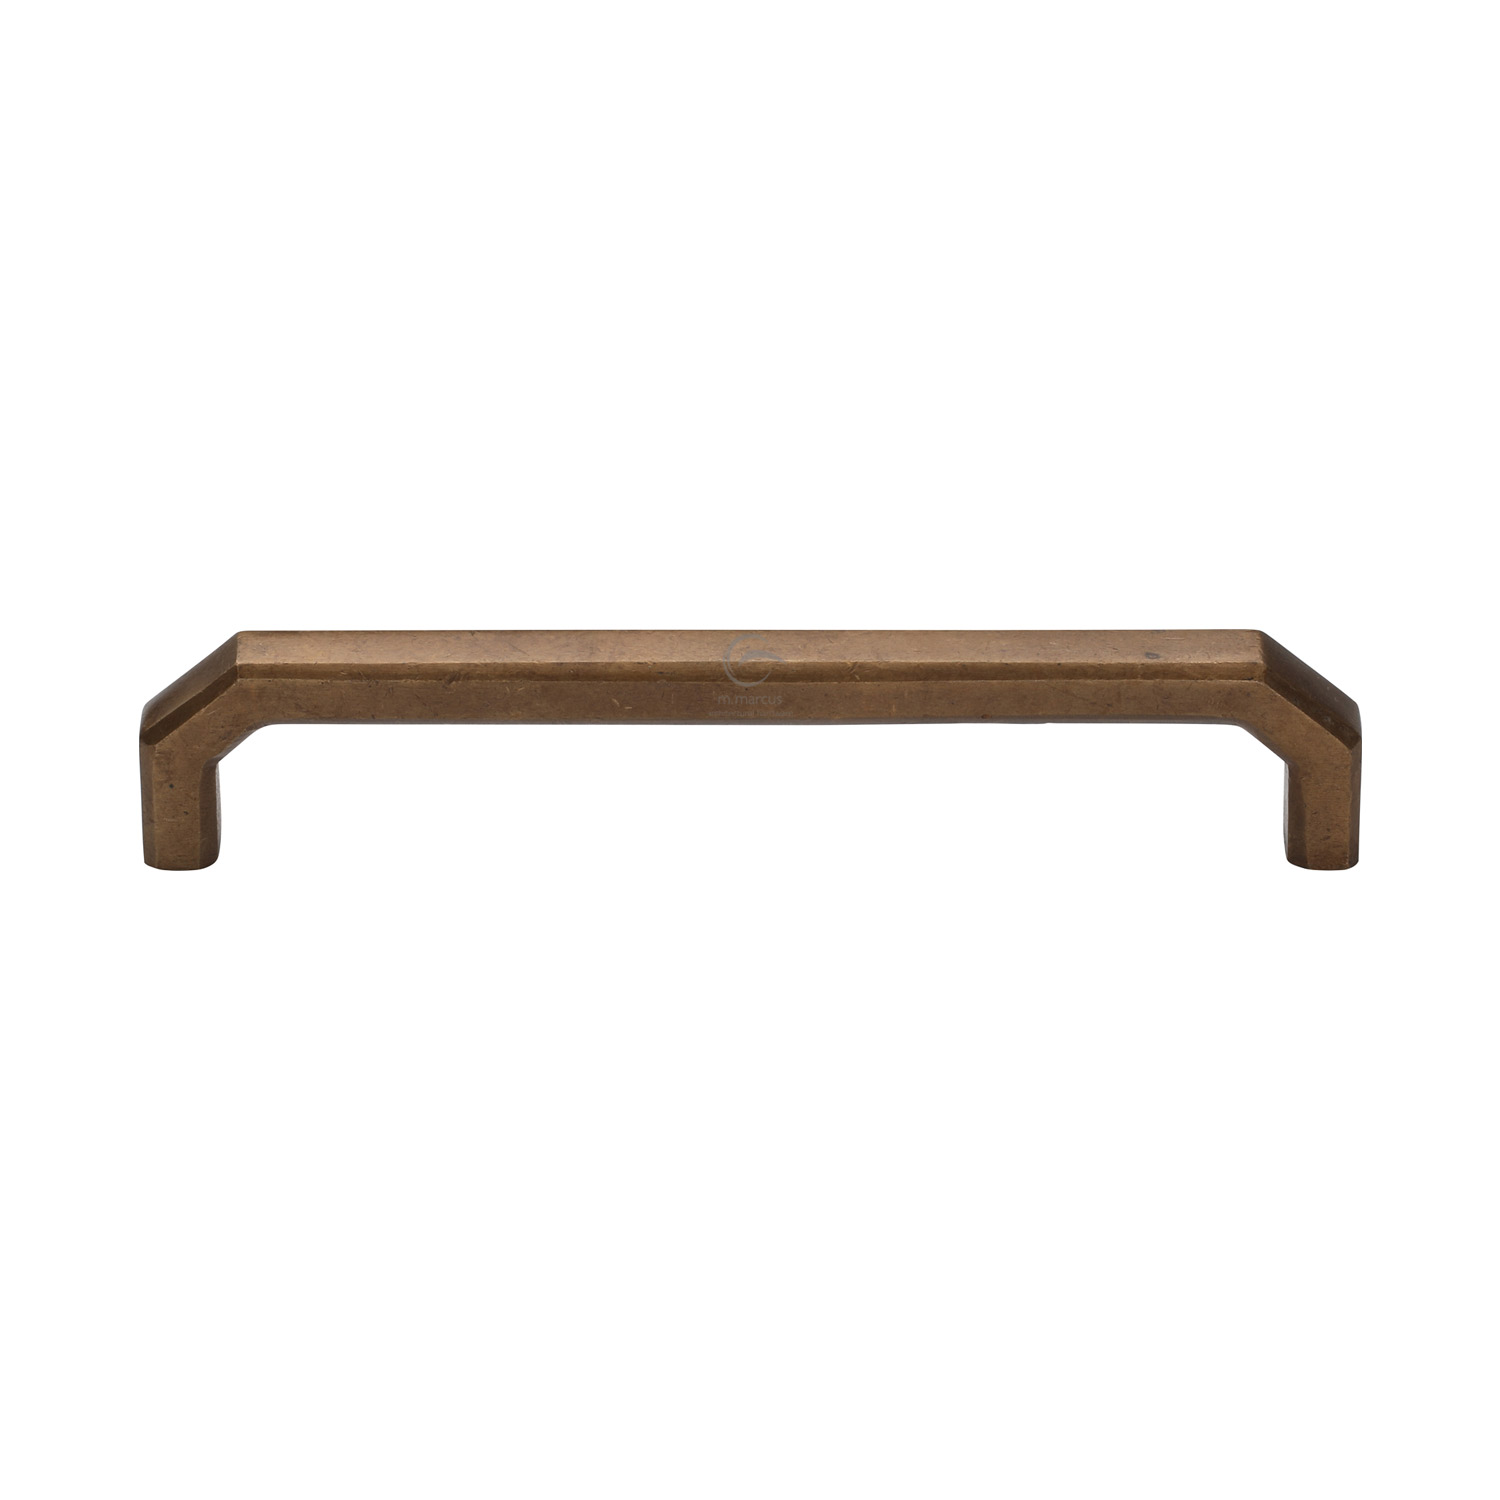 Bronze Rustic Cabinet Pull Angular Design 160mm c/c